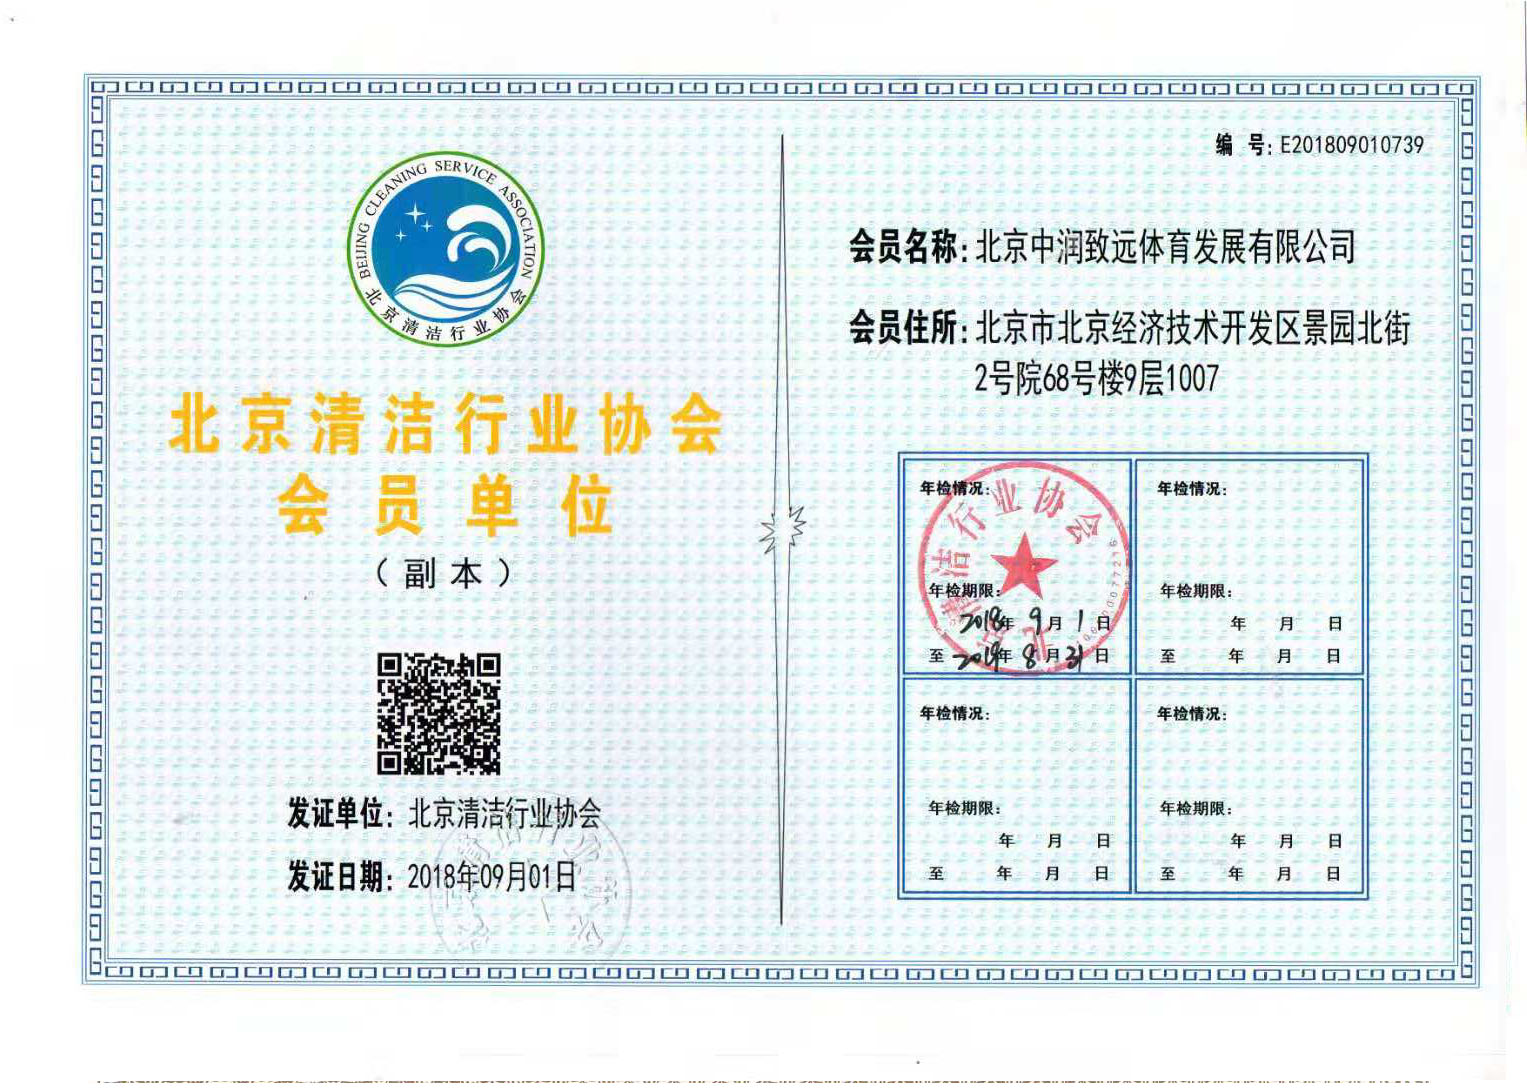 北京清洁行业协会会员单位